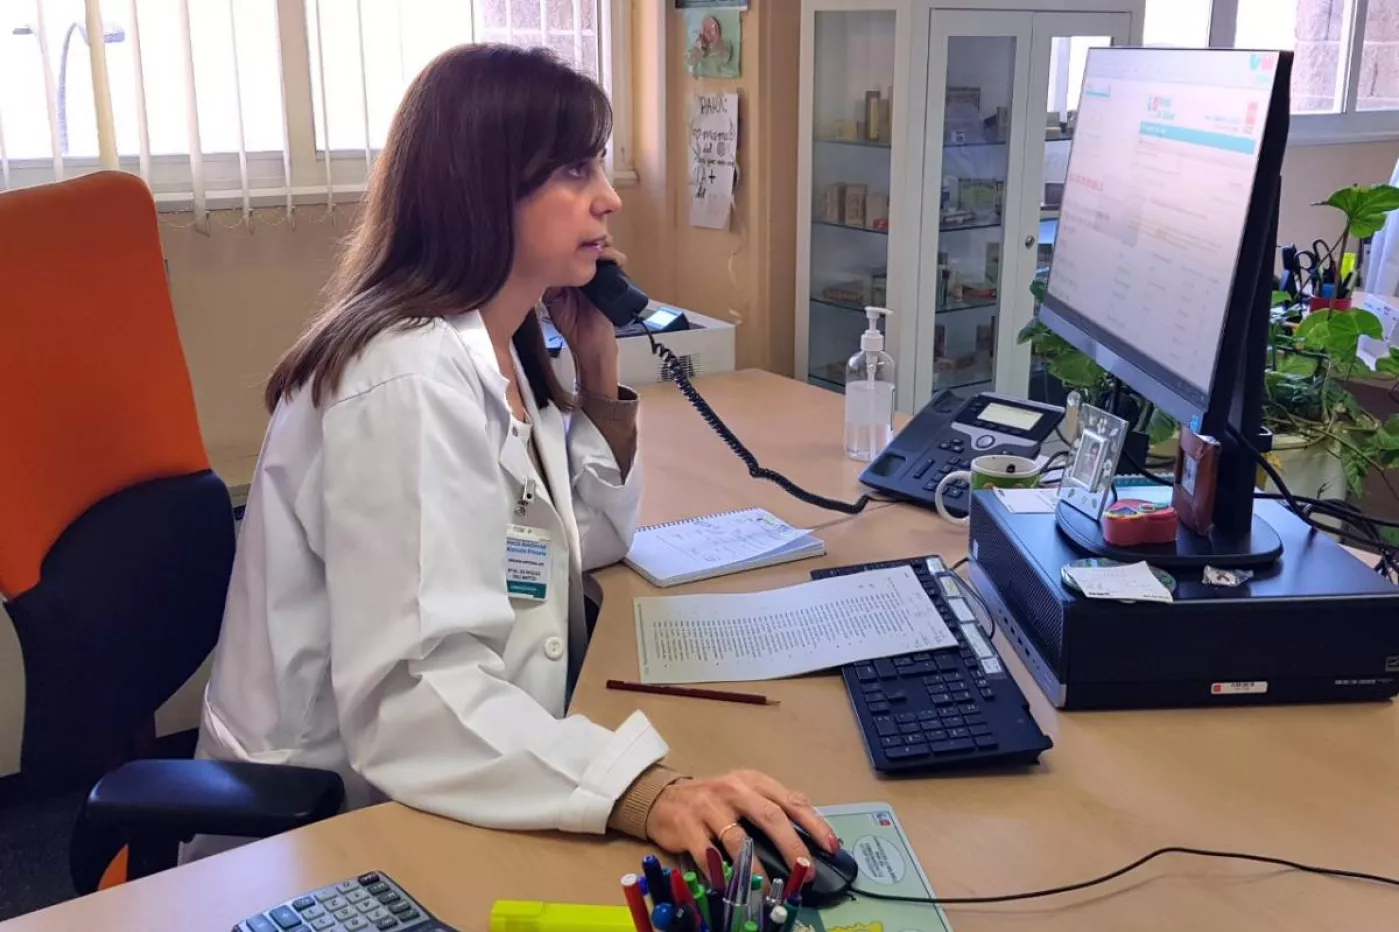 Mª de los Ángeles Cruz Martos, farmacéutica del Servicio de Farmacia AP. DA Sur (Madrid), atendiendo una consulta telefónica sobre medicamentos.